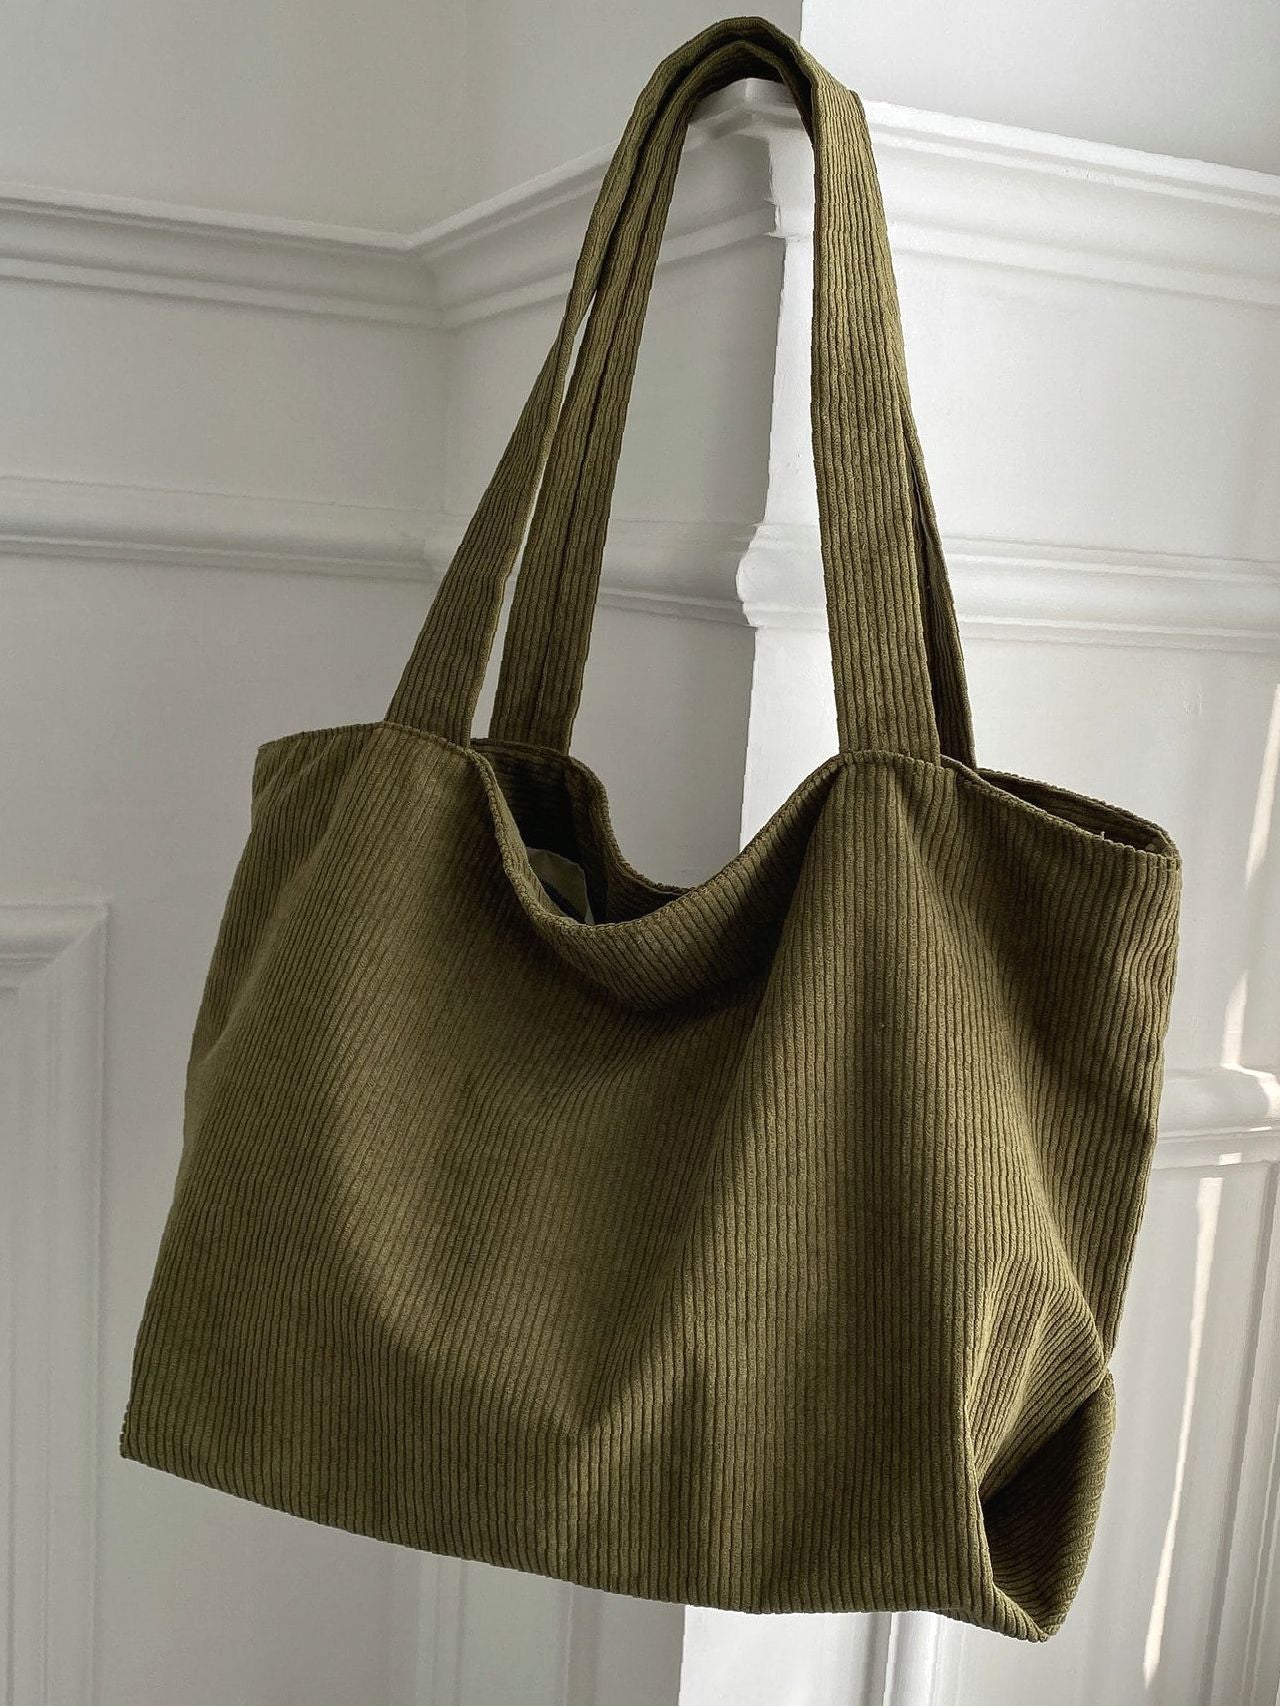 Minimalist Large Capacity Tote Bag - Women Tote Bags – OrcaJump